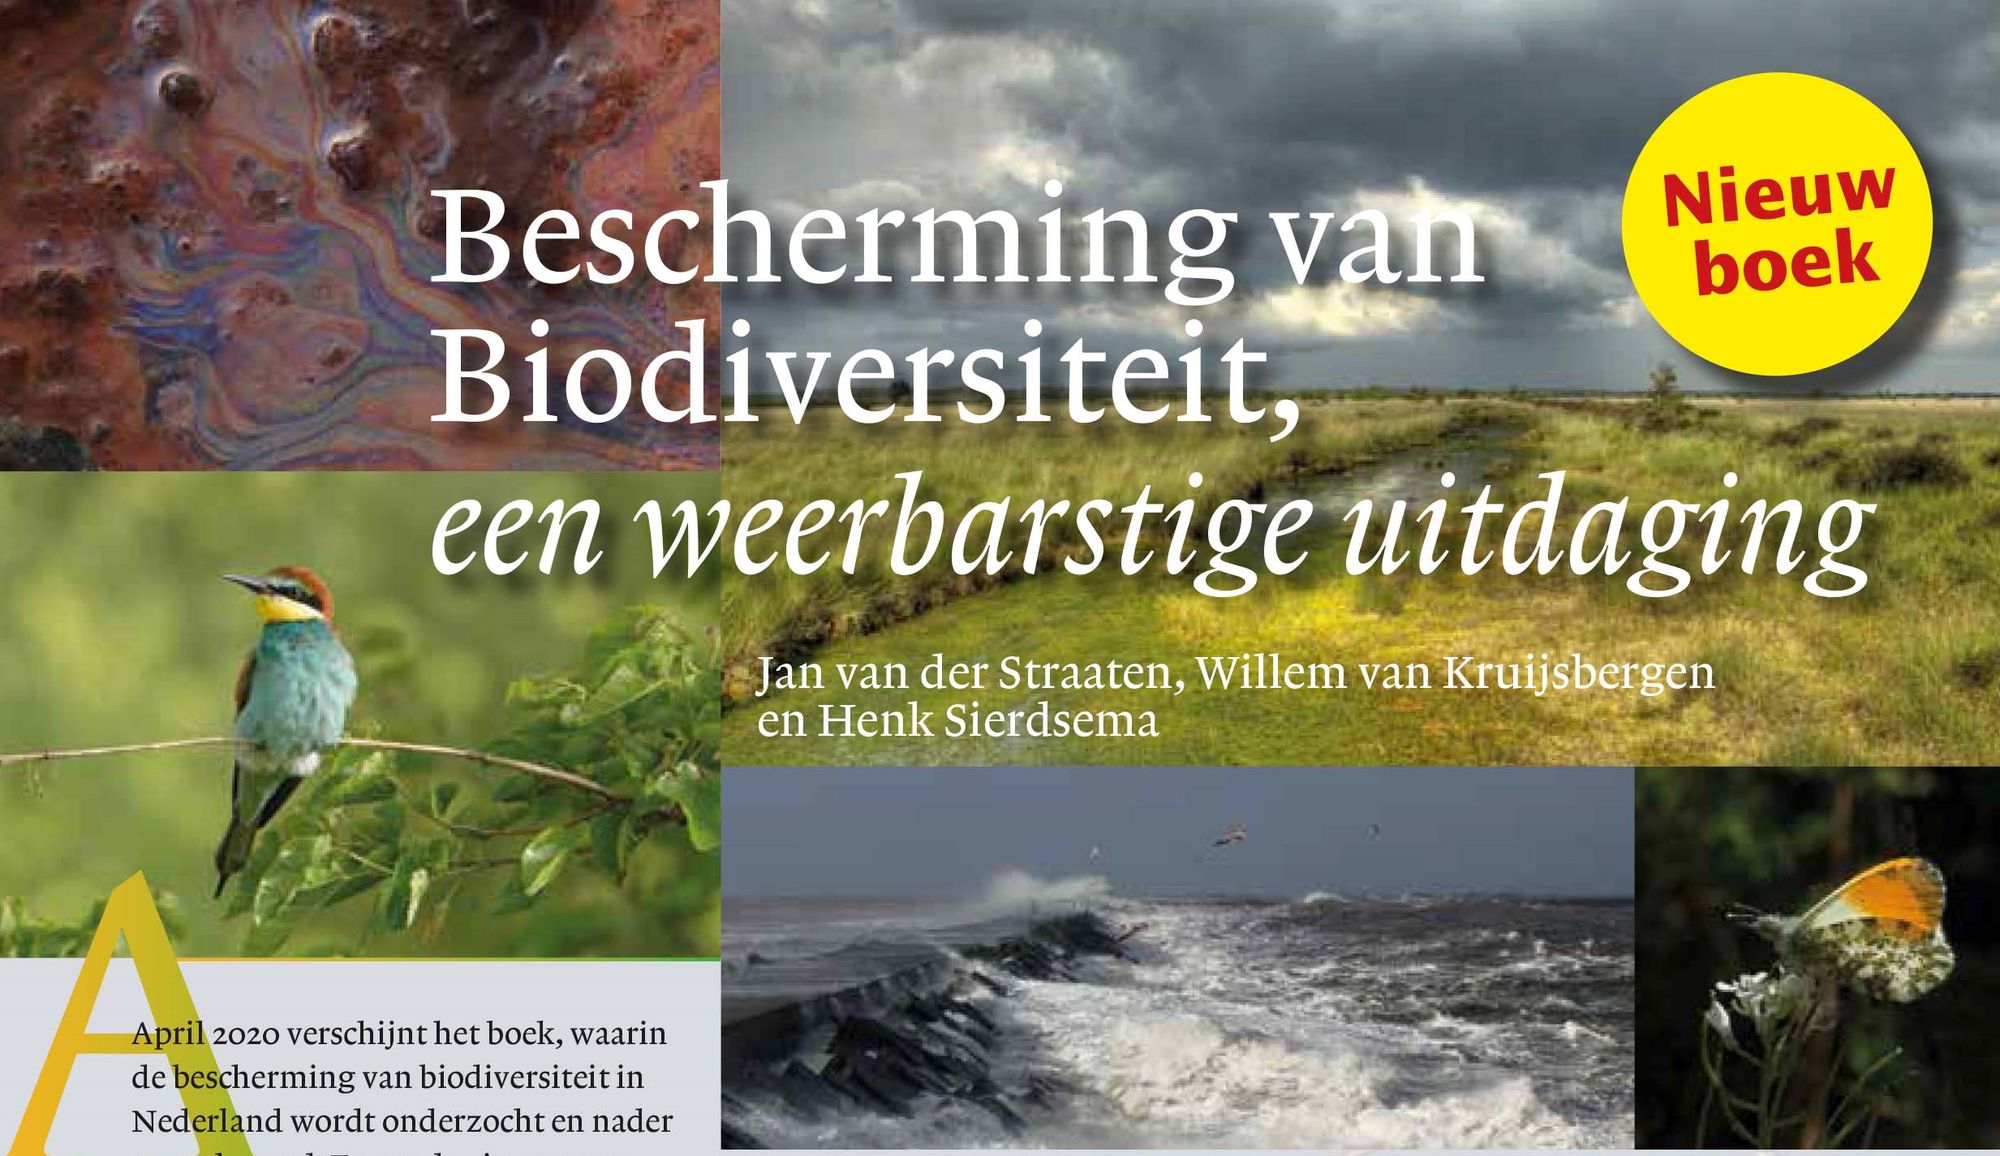 Boek: Bescherming van Biodiversiteit, een weerbarstige uitdaging.